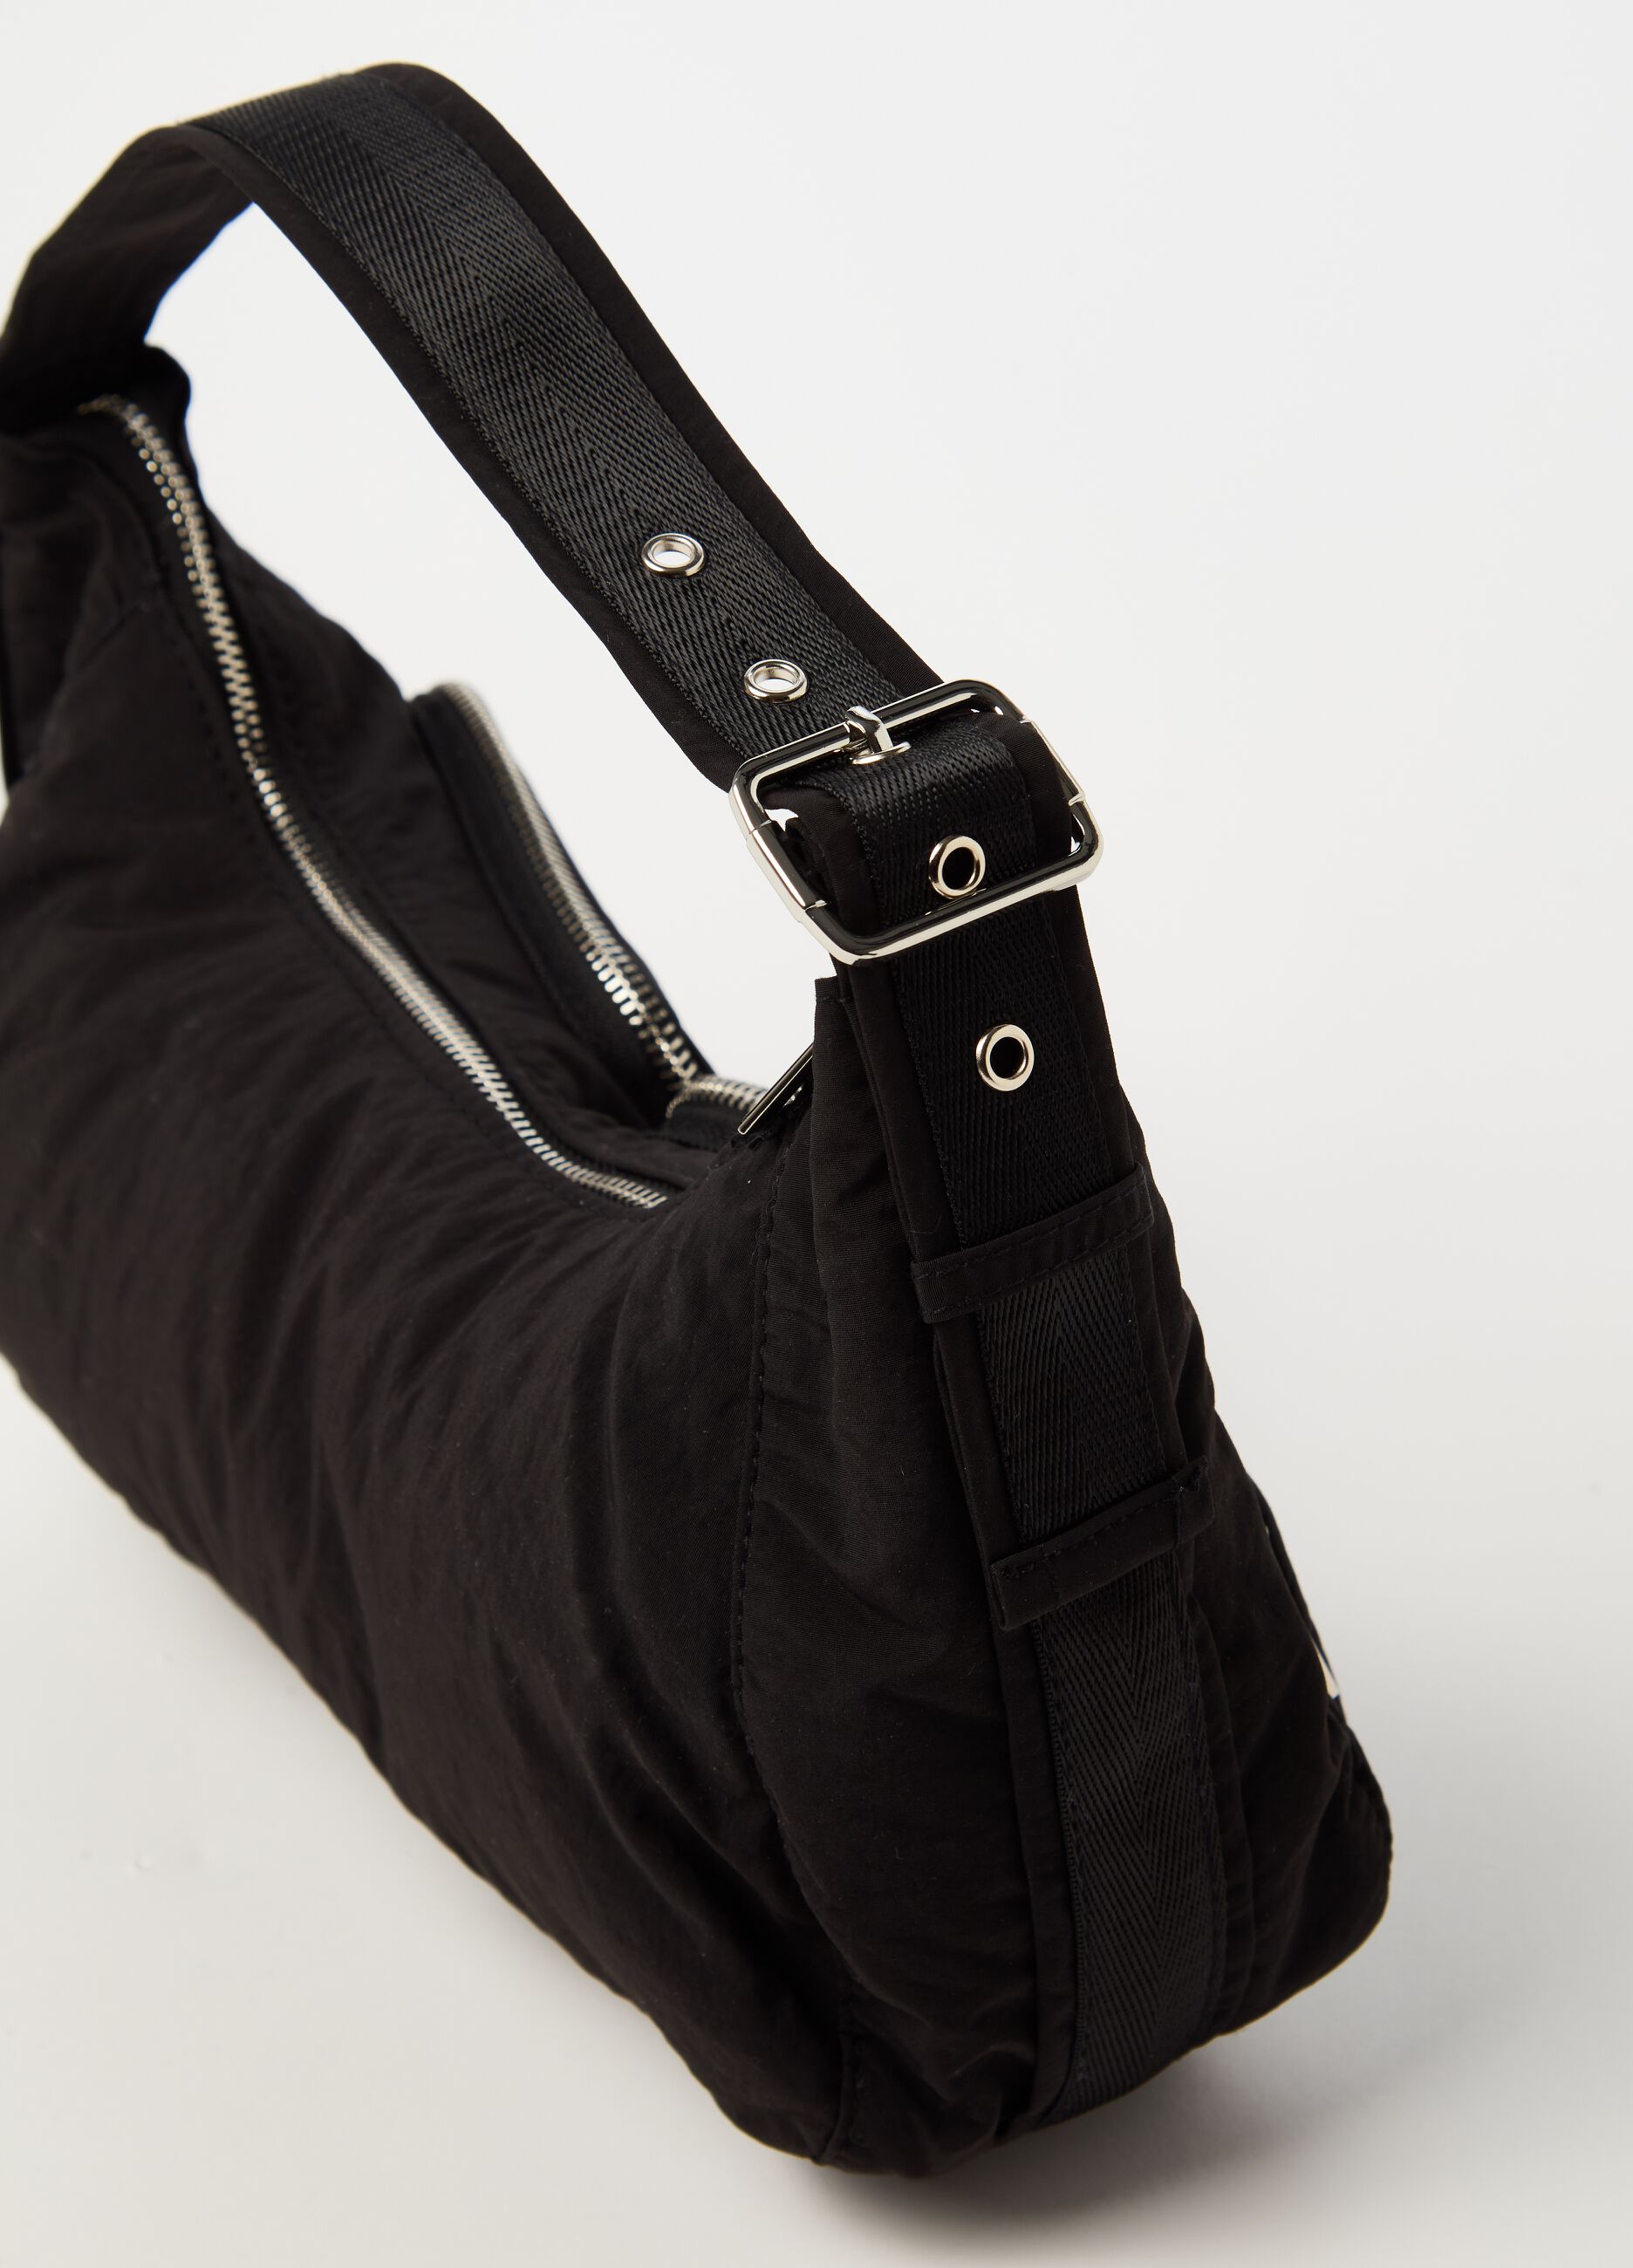 Shoulder bag with external pockets